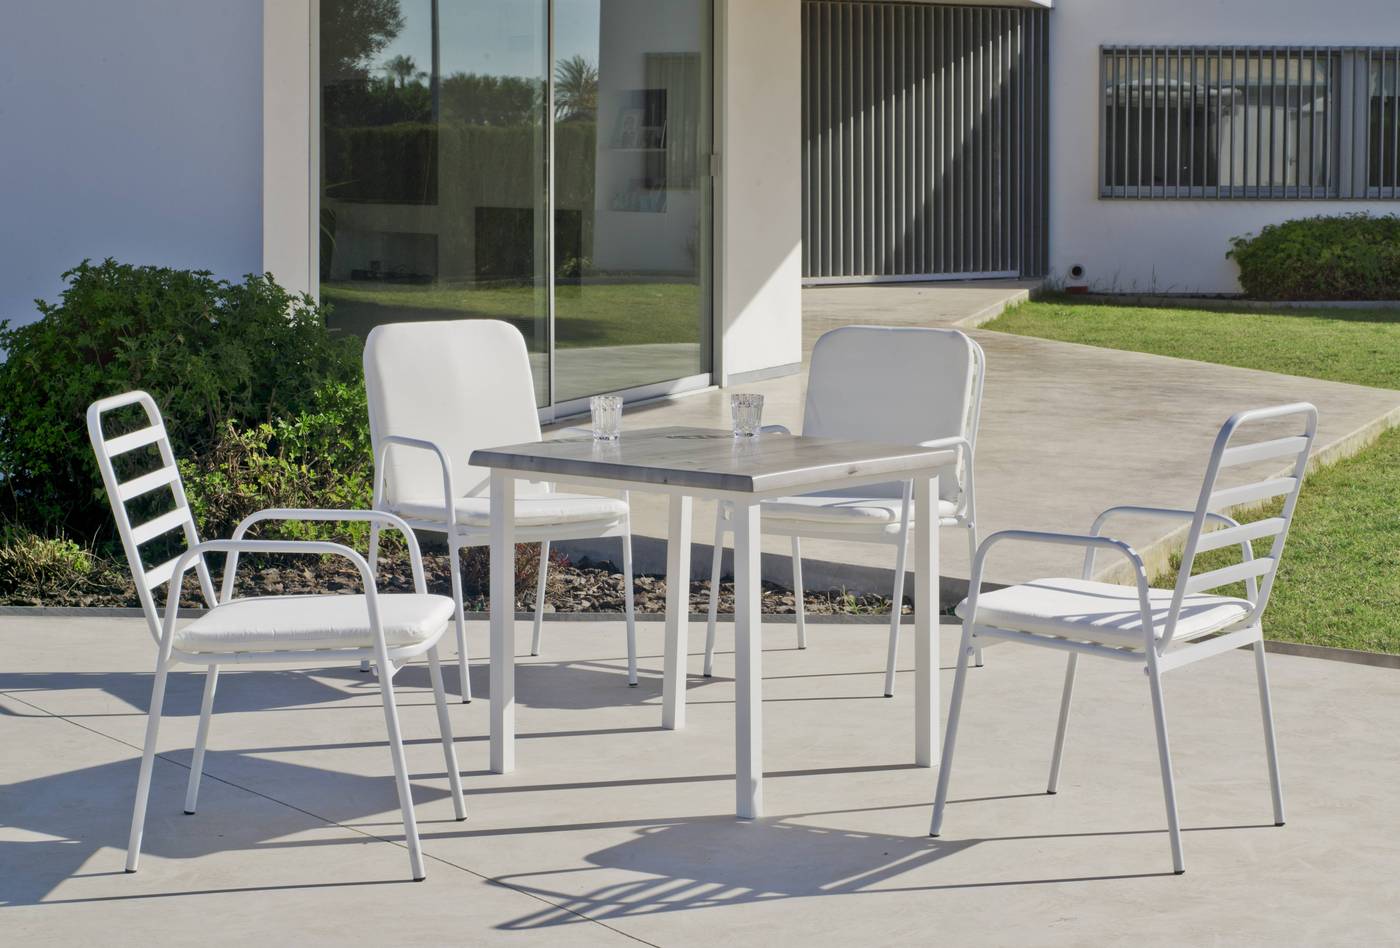 Conjunto aluminio de color blanco: mesa cuadrada 80 cm. con tablero de heverzaplus y 4 sillones apilables de aluminio